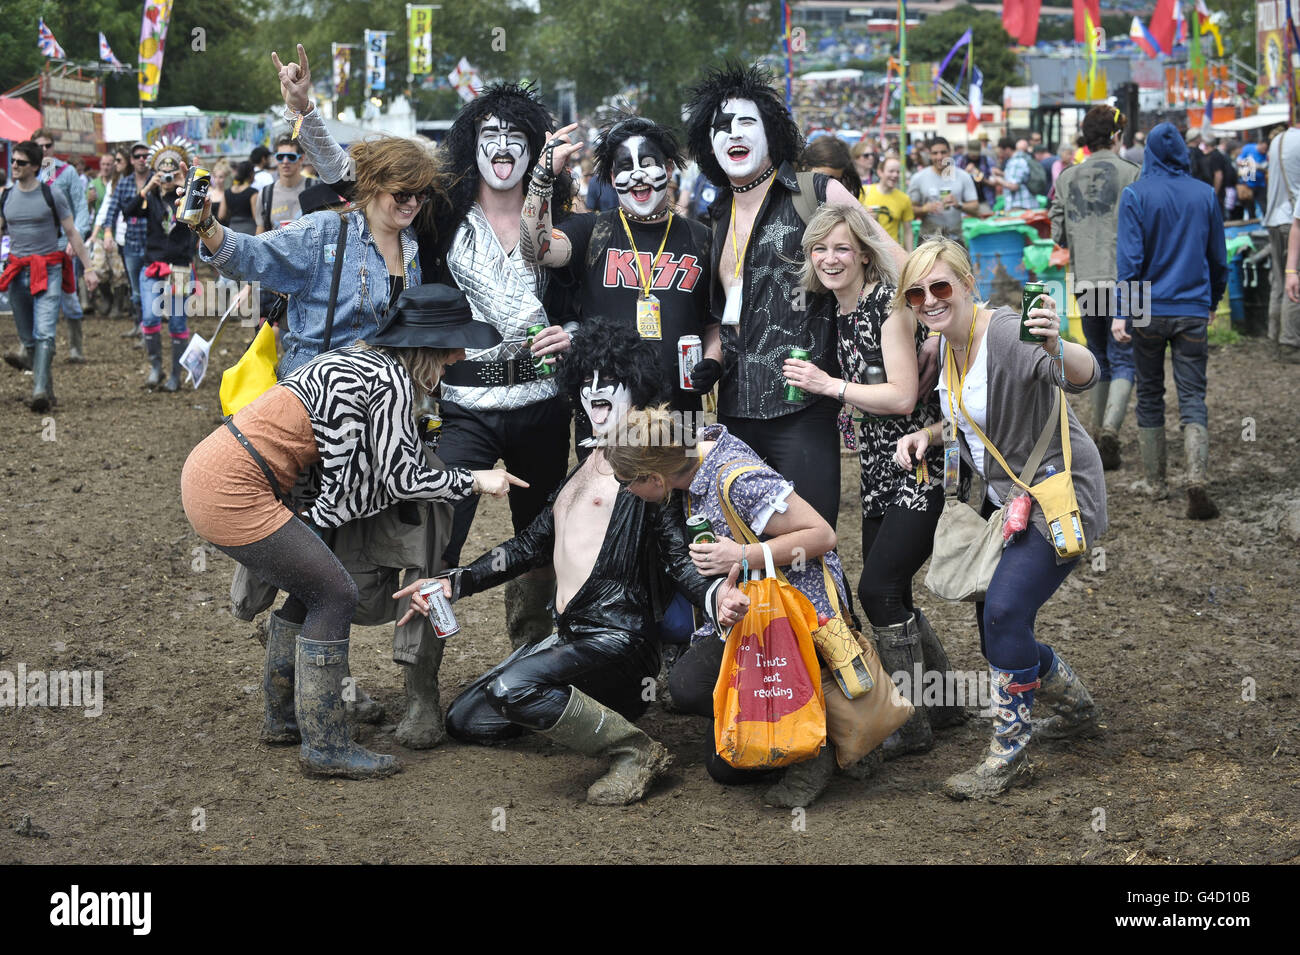 Nachtschwärmer verkleiden sich als die Band Kiss und ziehen ihre ganz eigenen Gruppen auf dem Glastonbury Festival in Worthy Farm, Pilton an. Stockfoto